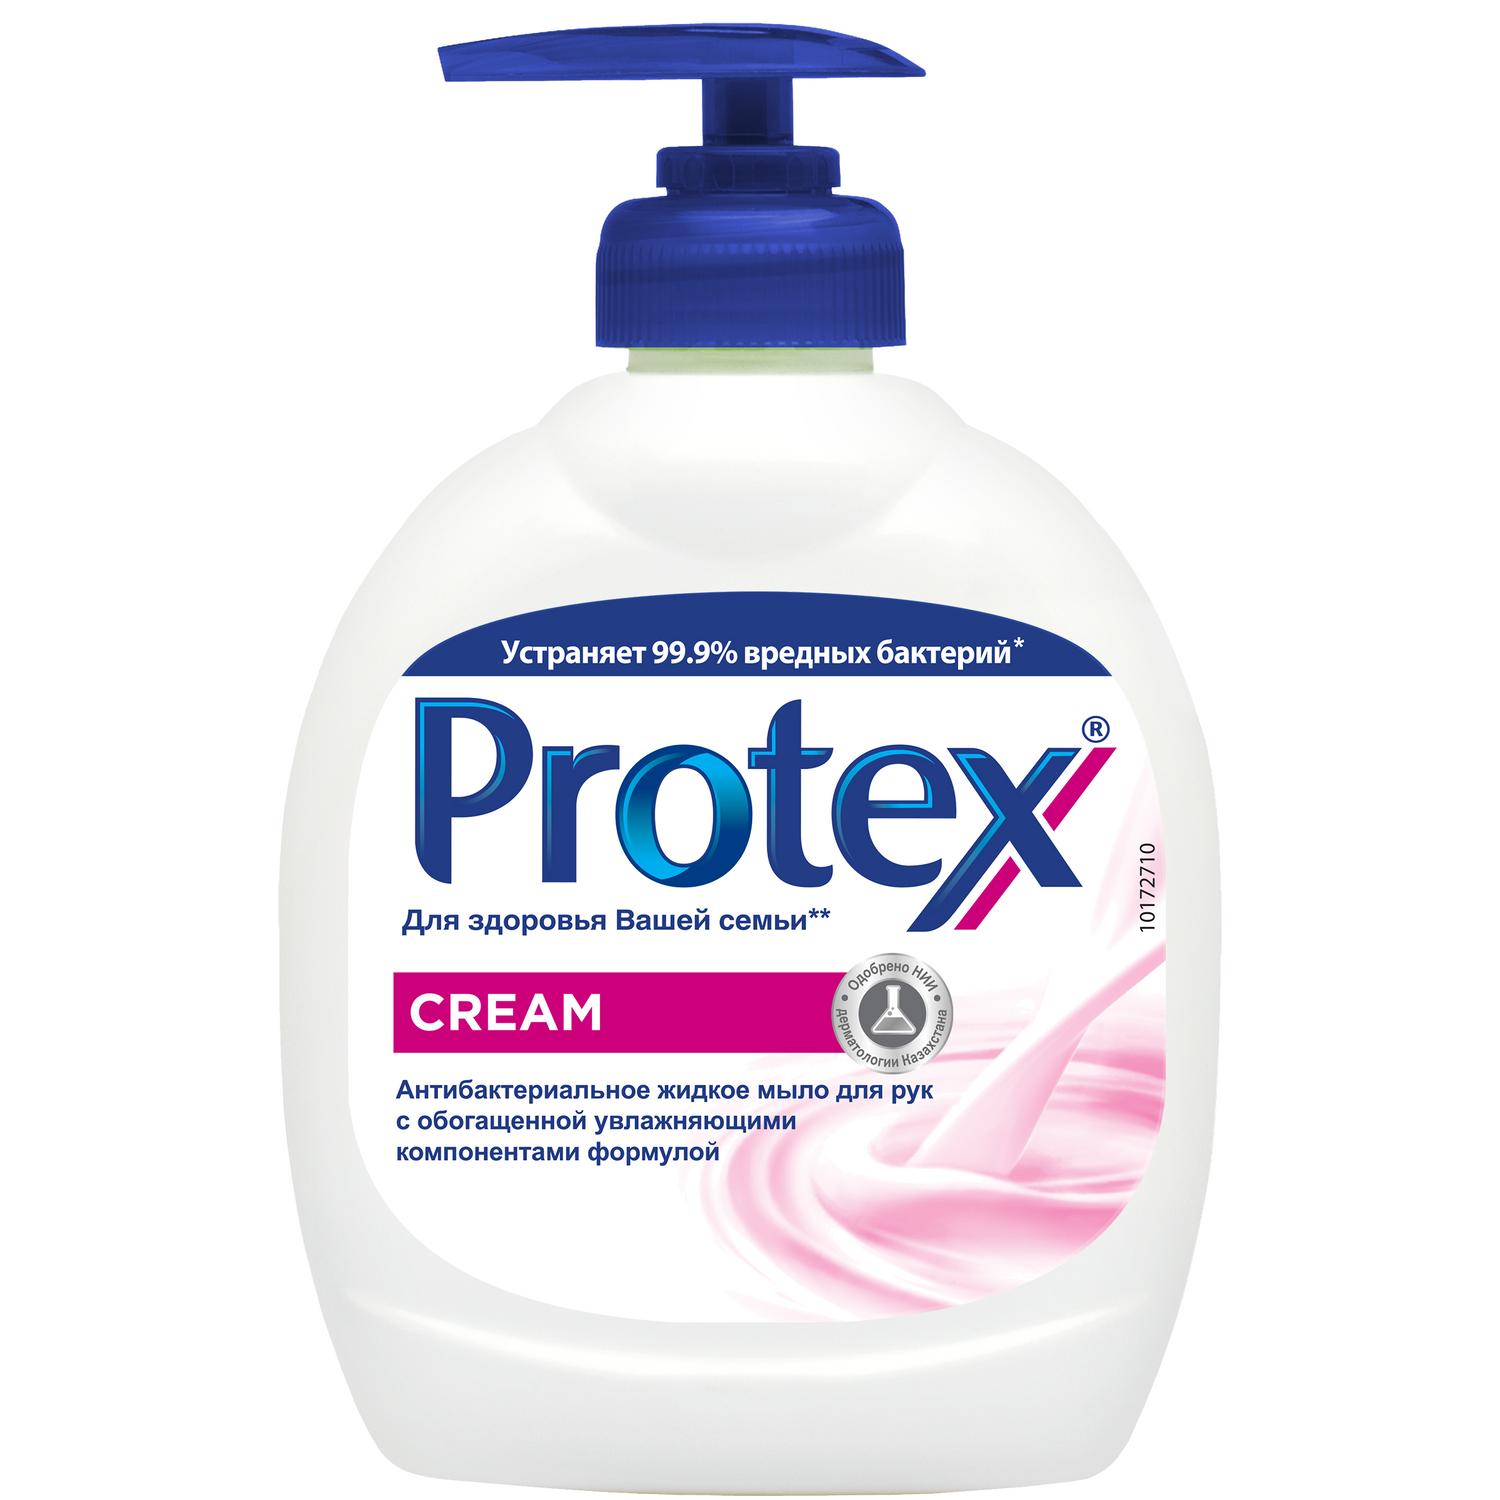 Protex Антибактериальное жидкое мыло для рук Cream, 300 мл мыло protex ultra антибактериальное 90 г